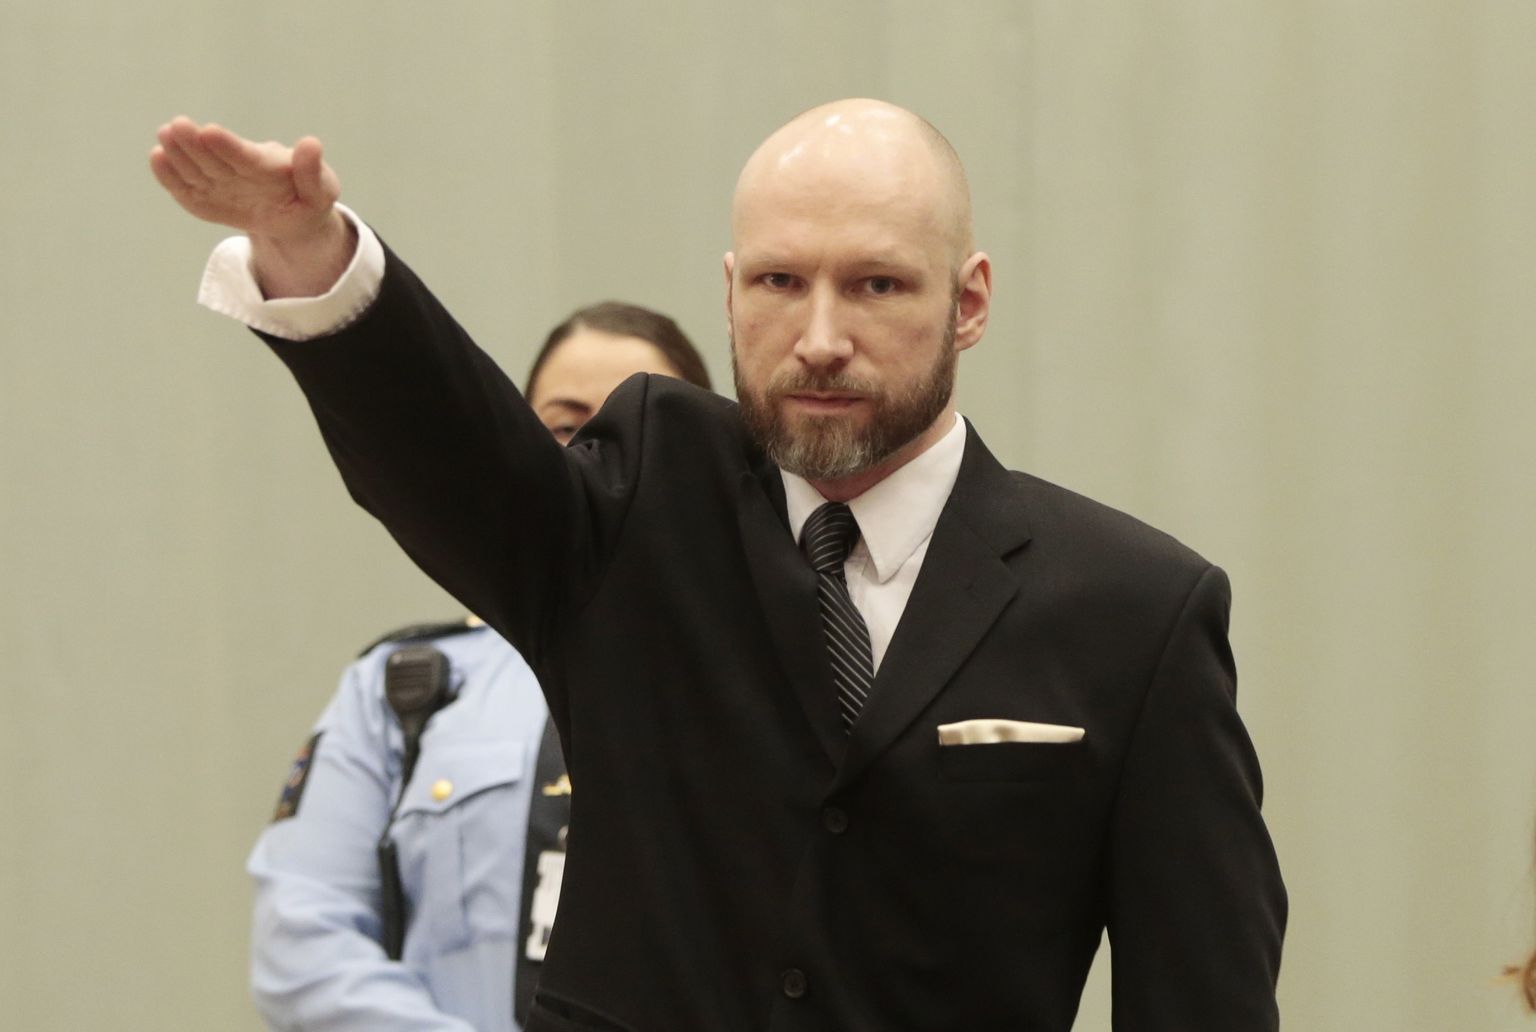 Anders Behring Breivik jaanuaris 2017 apellatsioonikohtus tegemas natside käemärki. Ta esitas kohtule palve ta tingimis vabastada, kuid seda ei rahuldatud